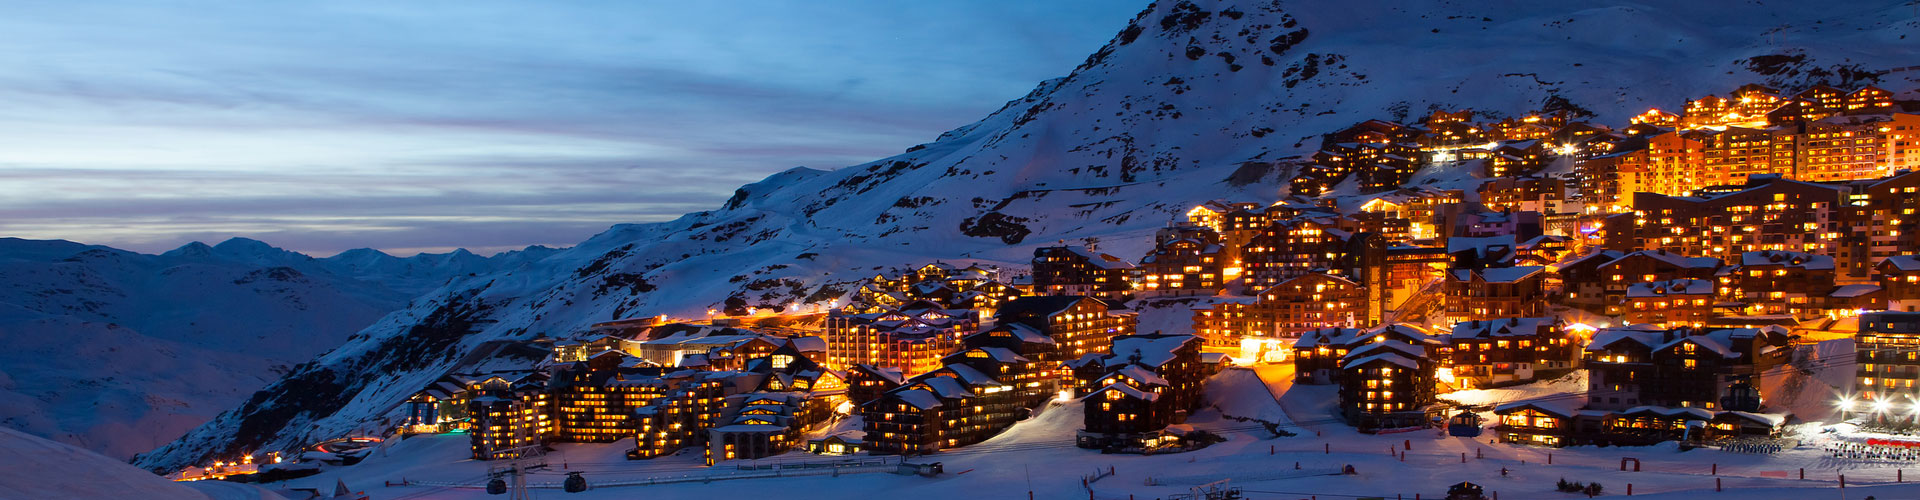 Holidays on Valthorens ski slopes, by night